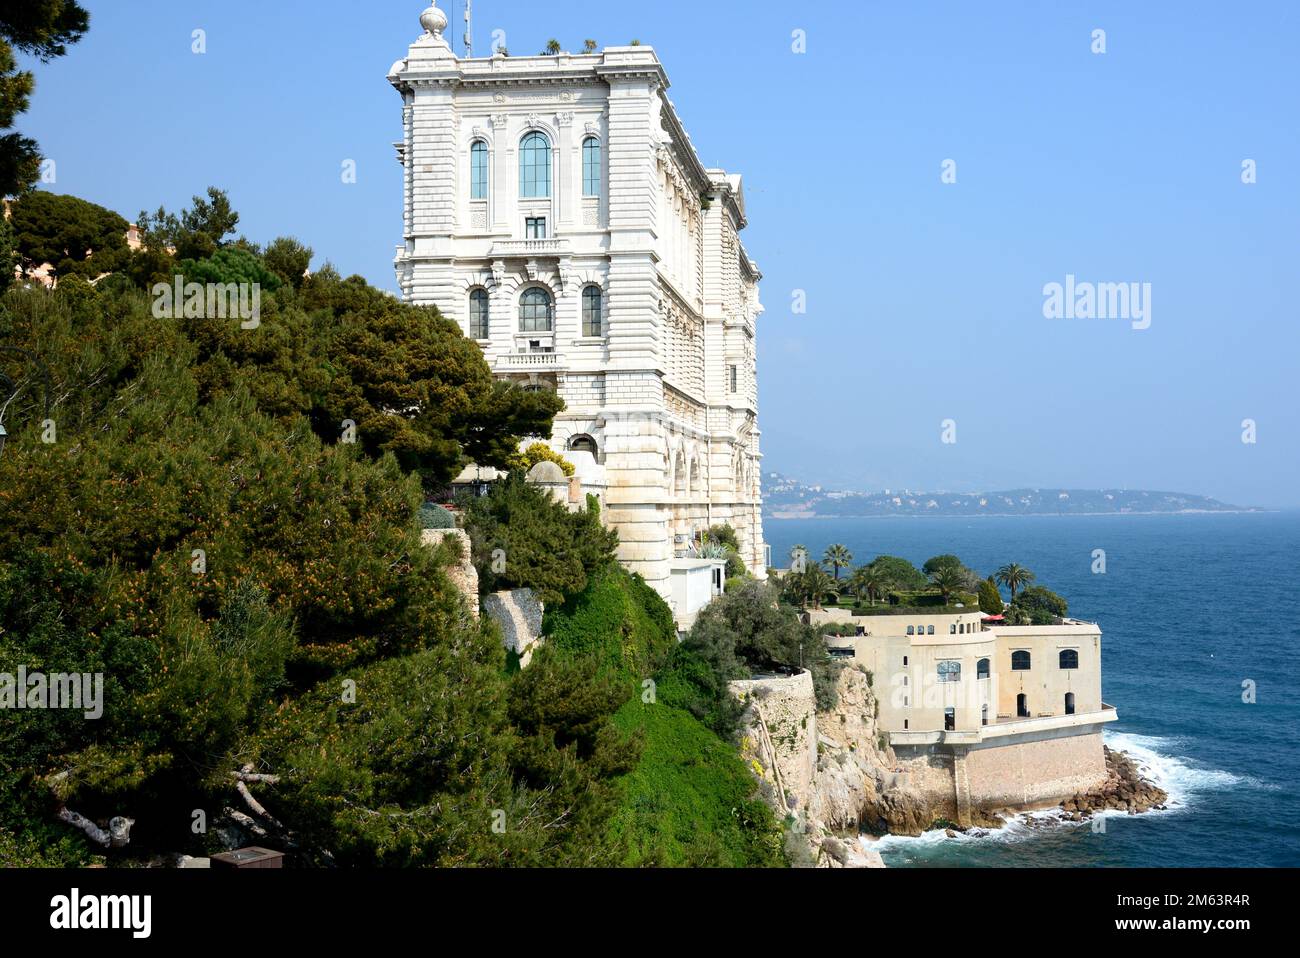 La Principauté de Monaco est dirigée par le Prince Albert II. Le musée océanographique fondé par le Prince Albert 1er abrite 600 espèces de poissons. Stock Photo